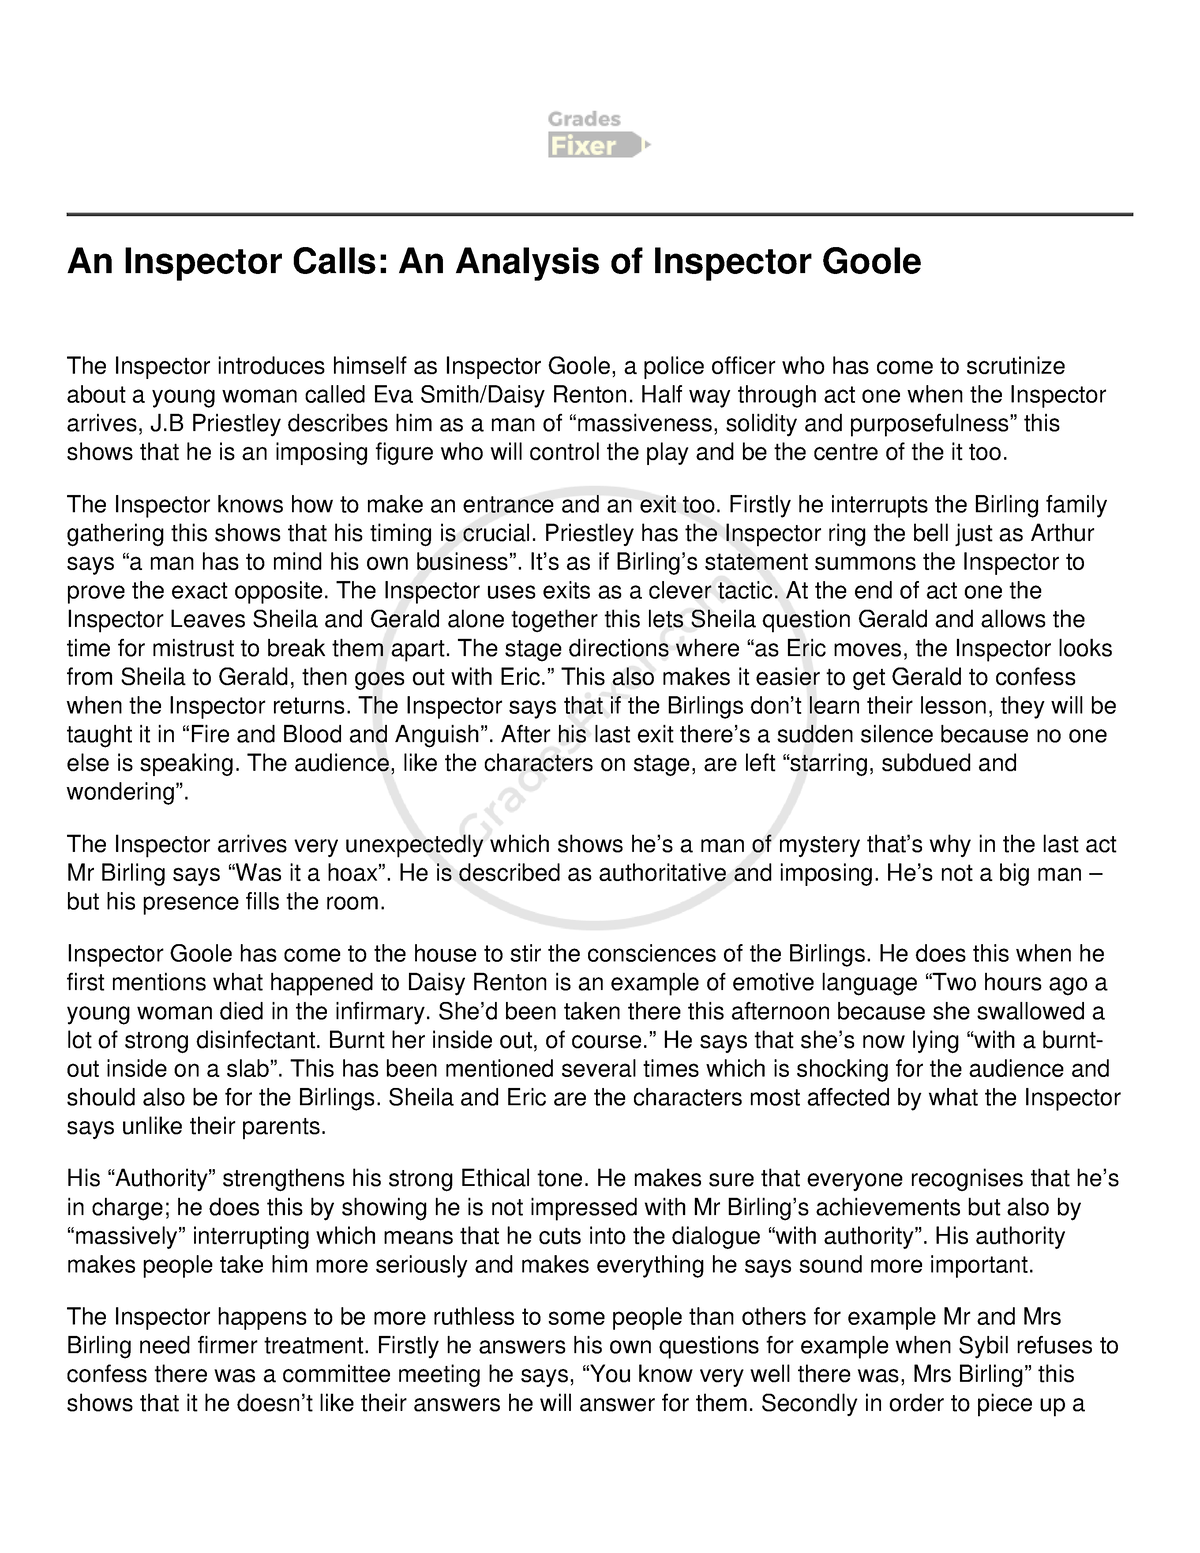 An Inspector Calls An Analysis of Inspector Goole - Half way through ...